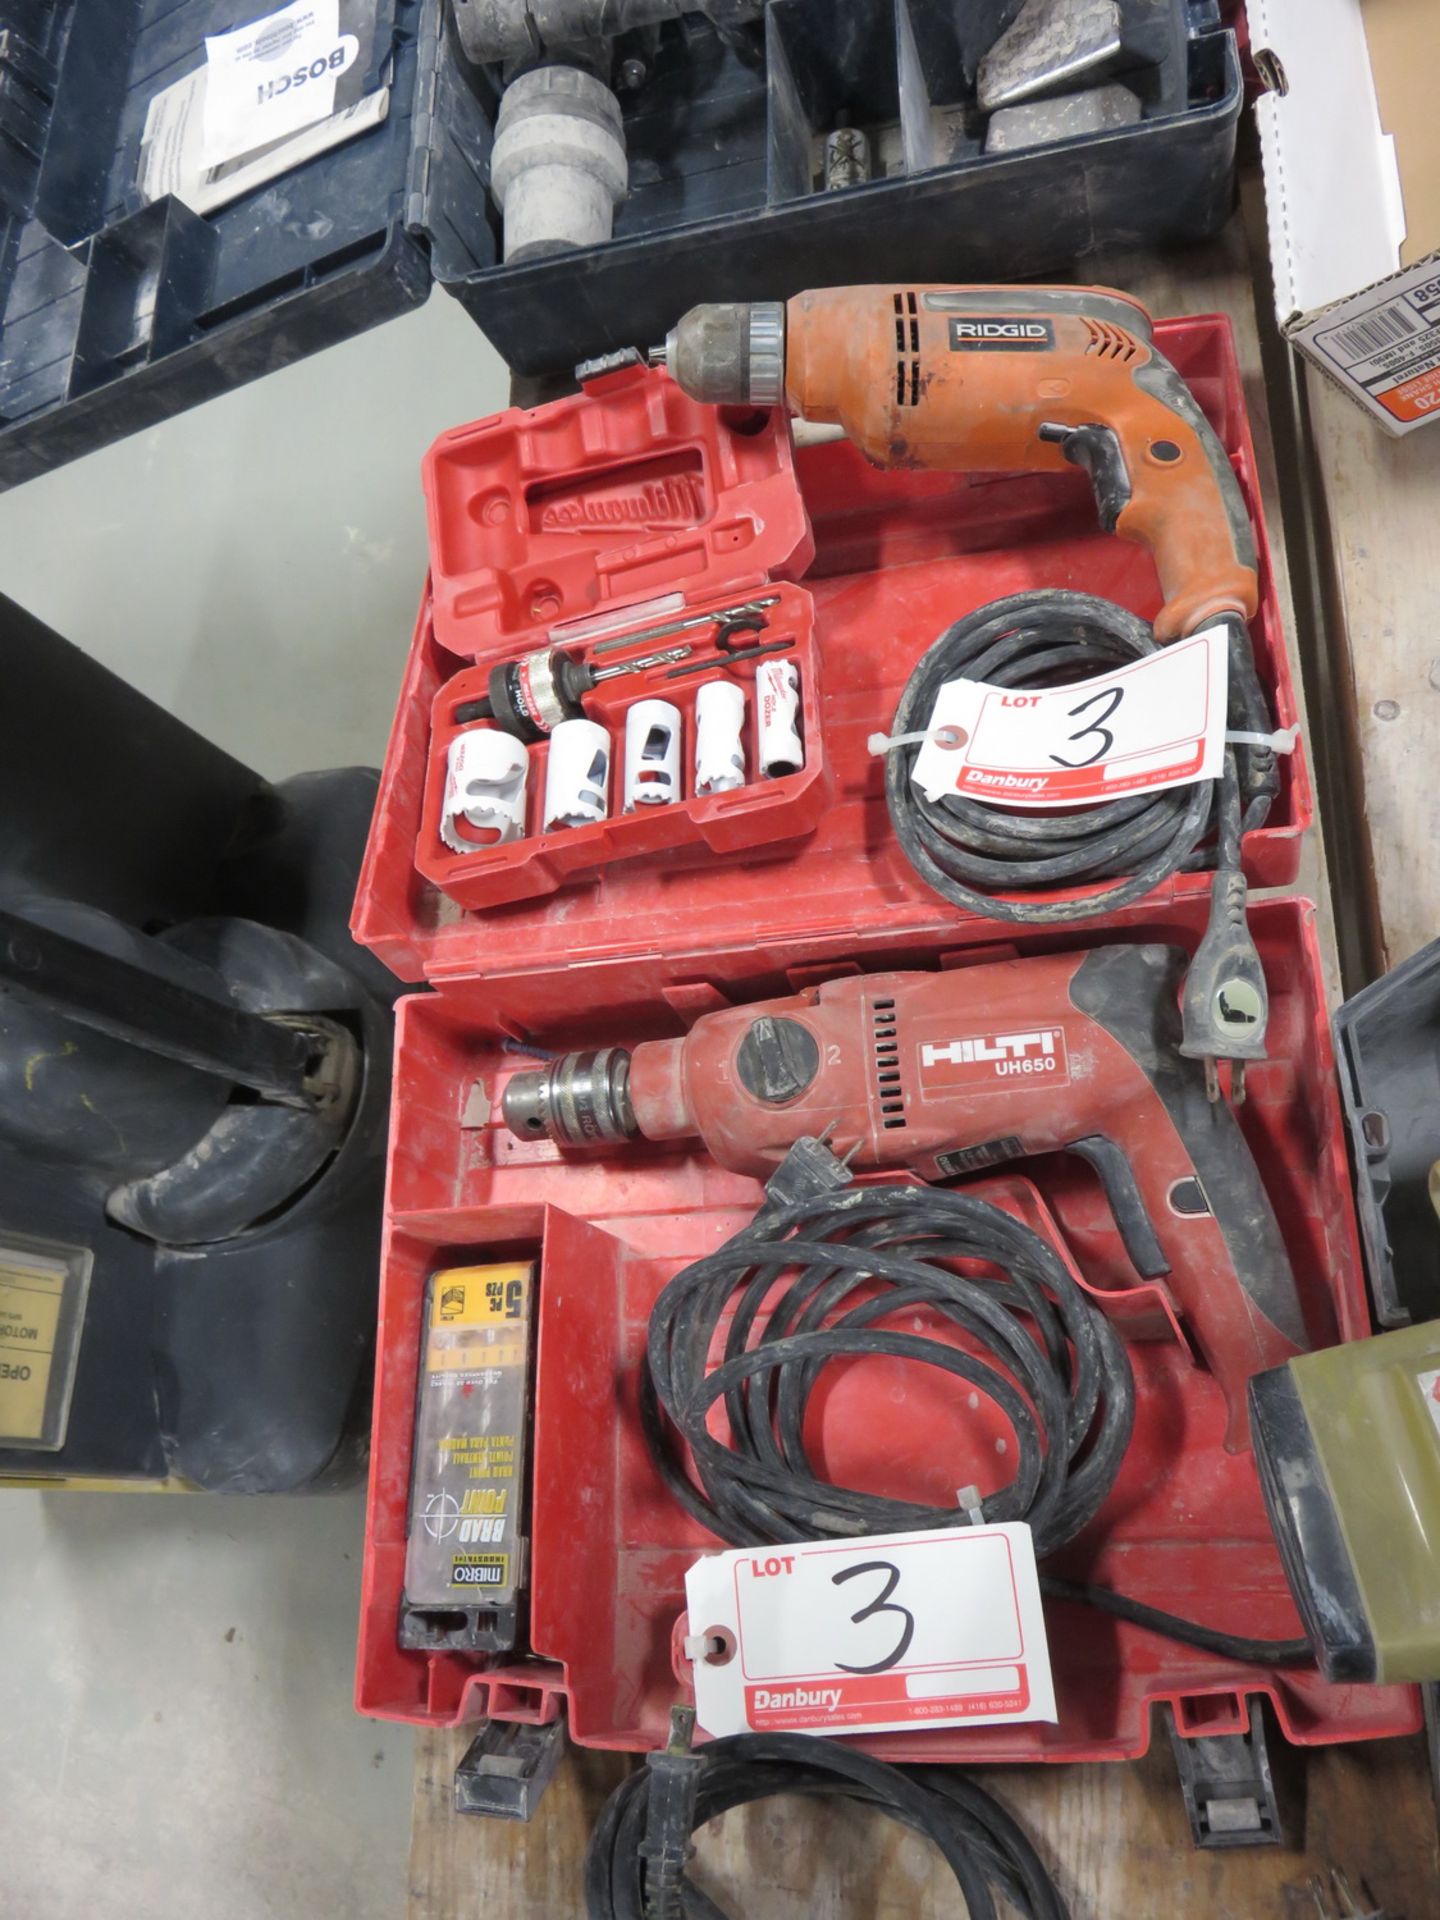 LOT - HILTI UH650 & RIDGID R7000 ELECTRIC DRILLS W/ MILWAUKEE BI-METAL HOLE SAW KIT